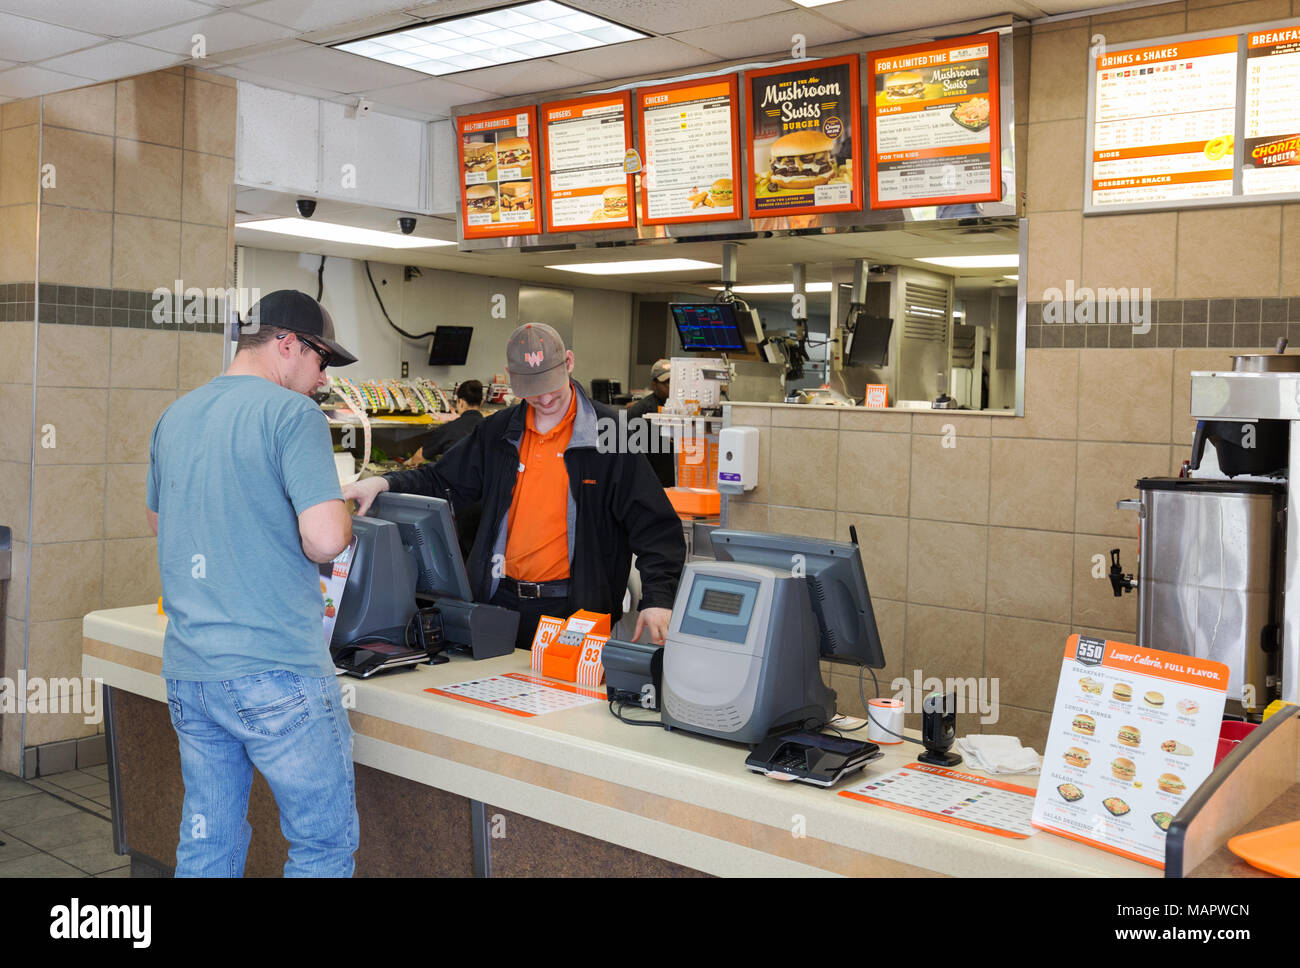 L'achat d'un homme de l'intérieur de whataburger, un magasin burger Whataburger, Austin, Texas USA Banque D'Images